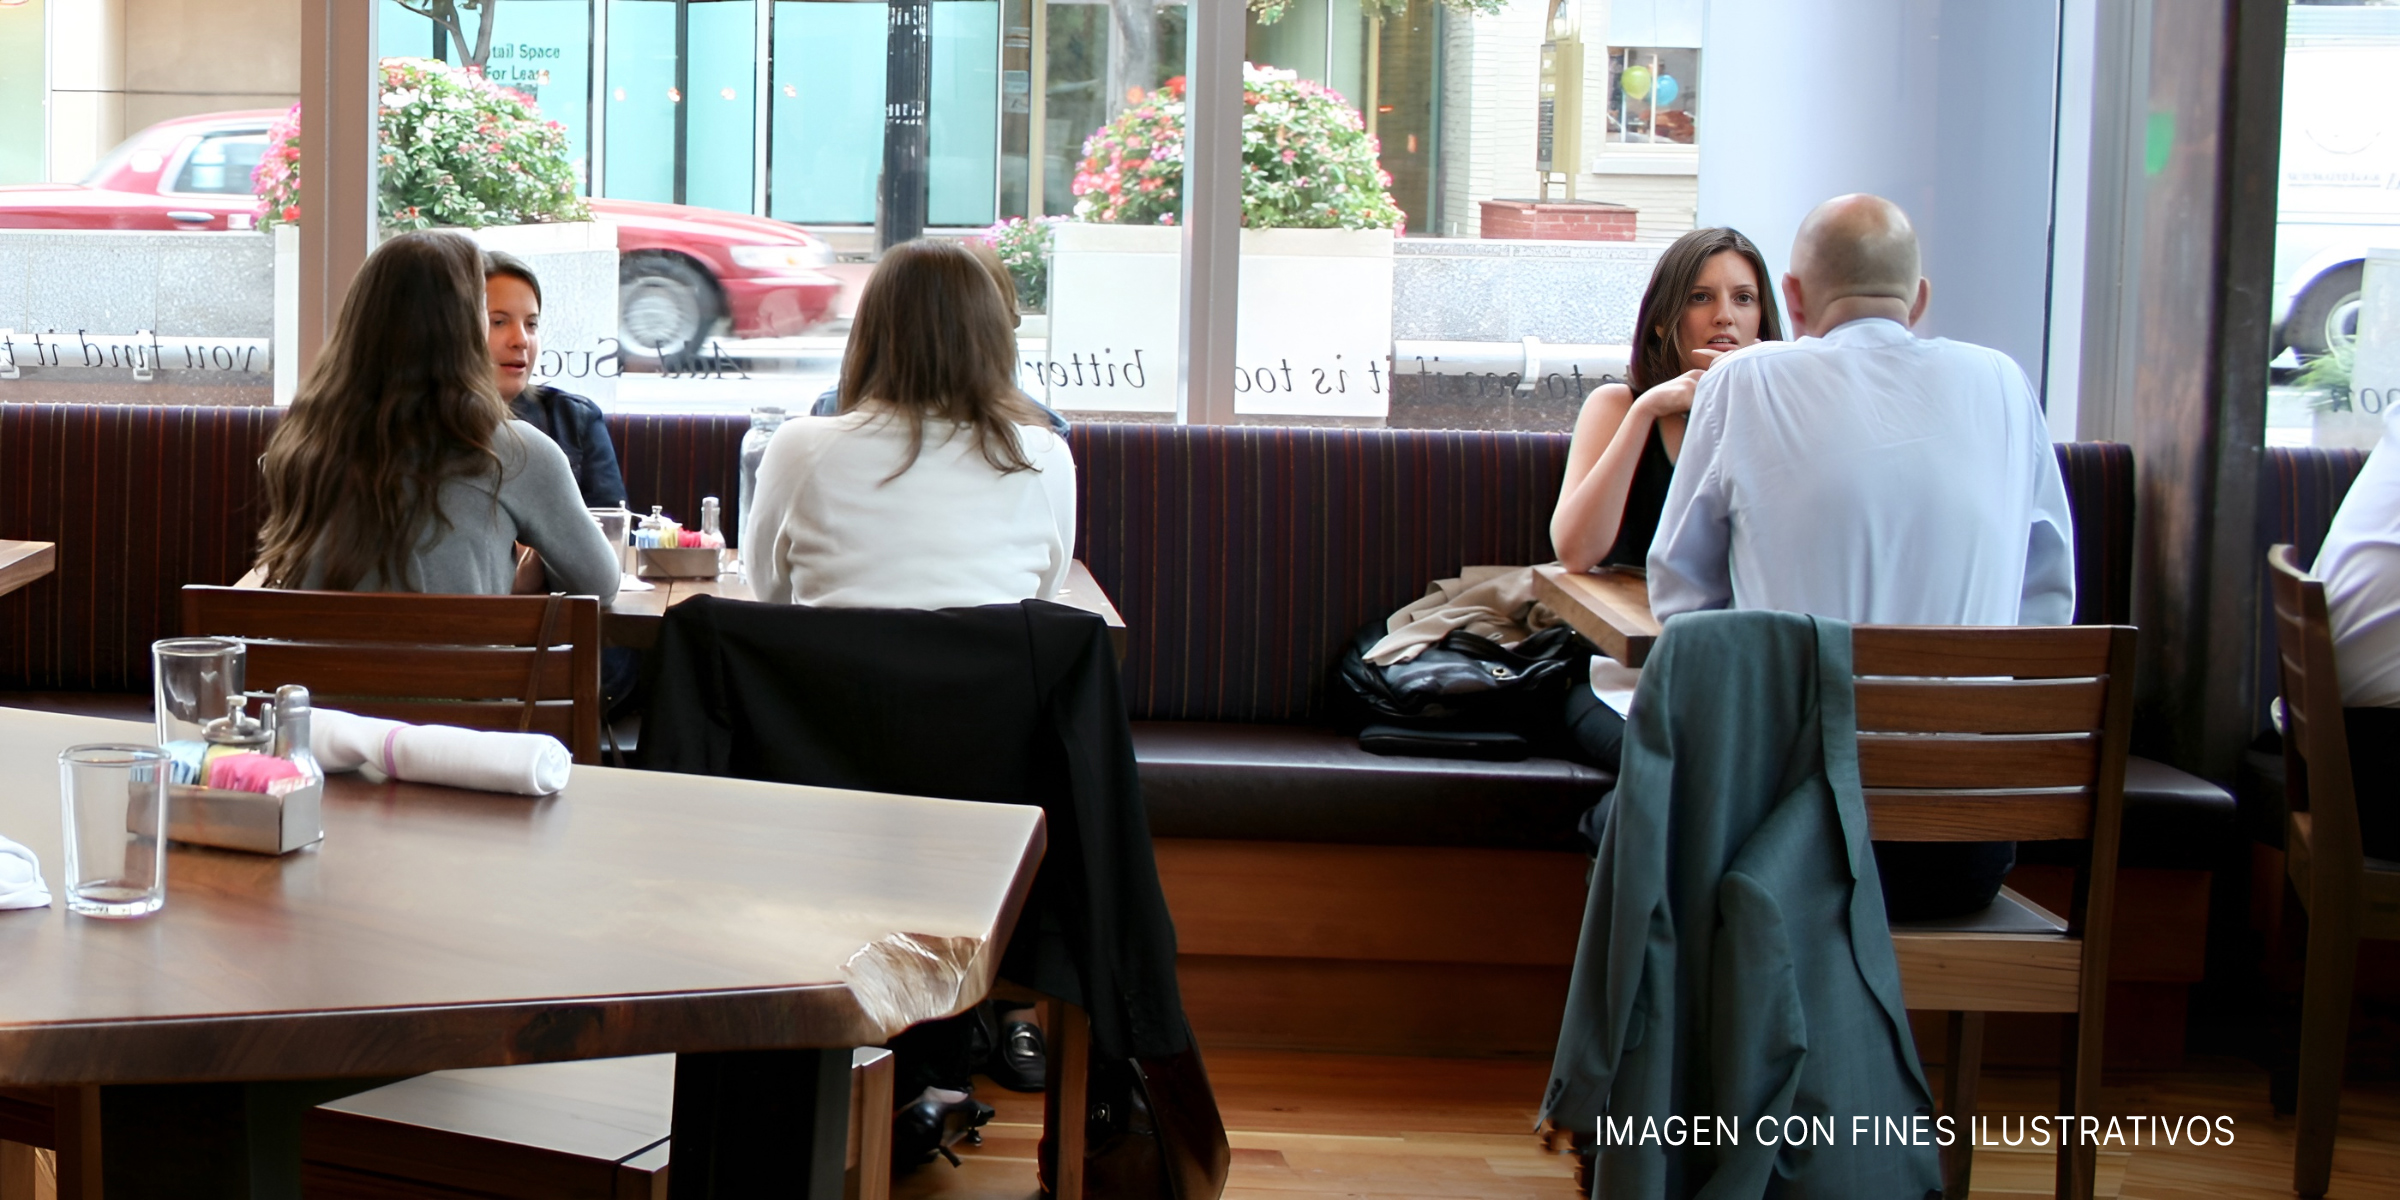 Gente sentada en un restaurante. | Fuente: Flickr.com